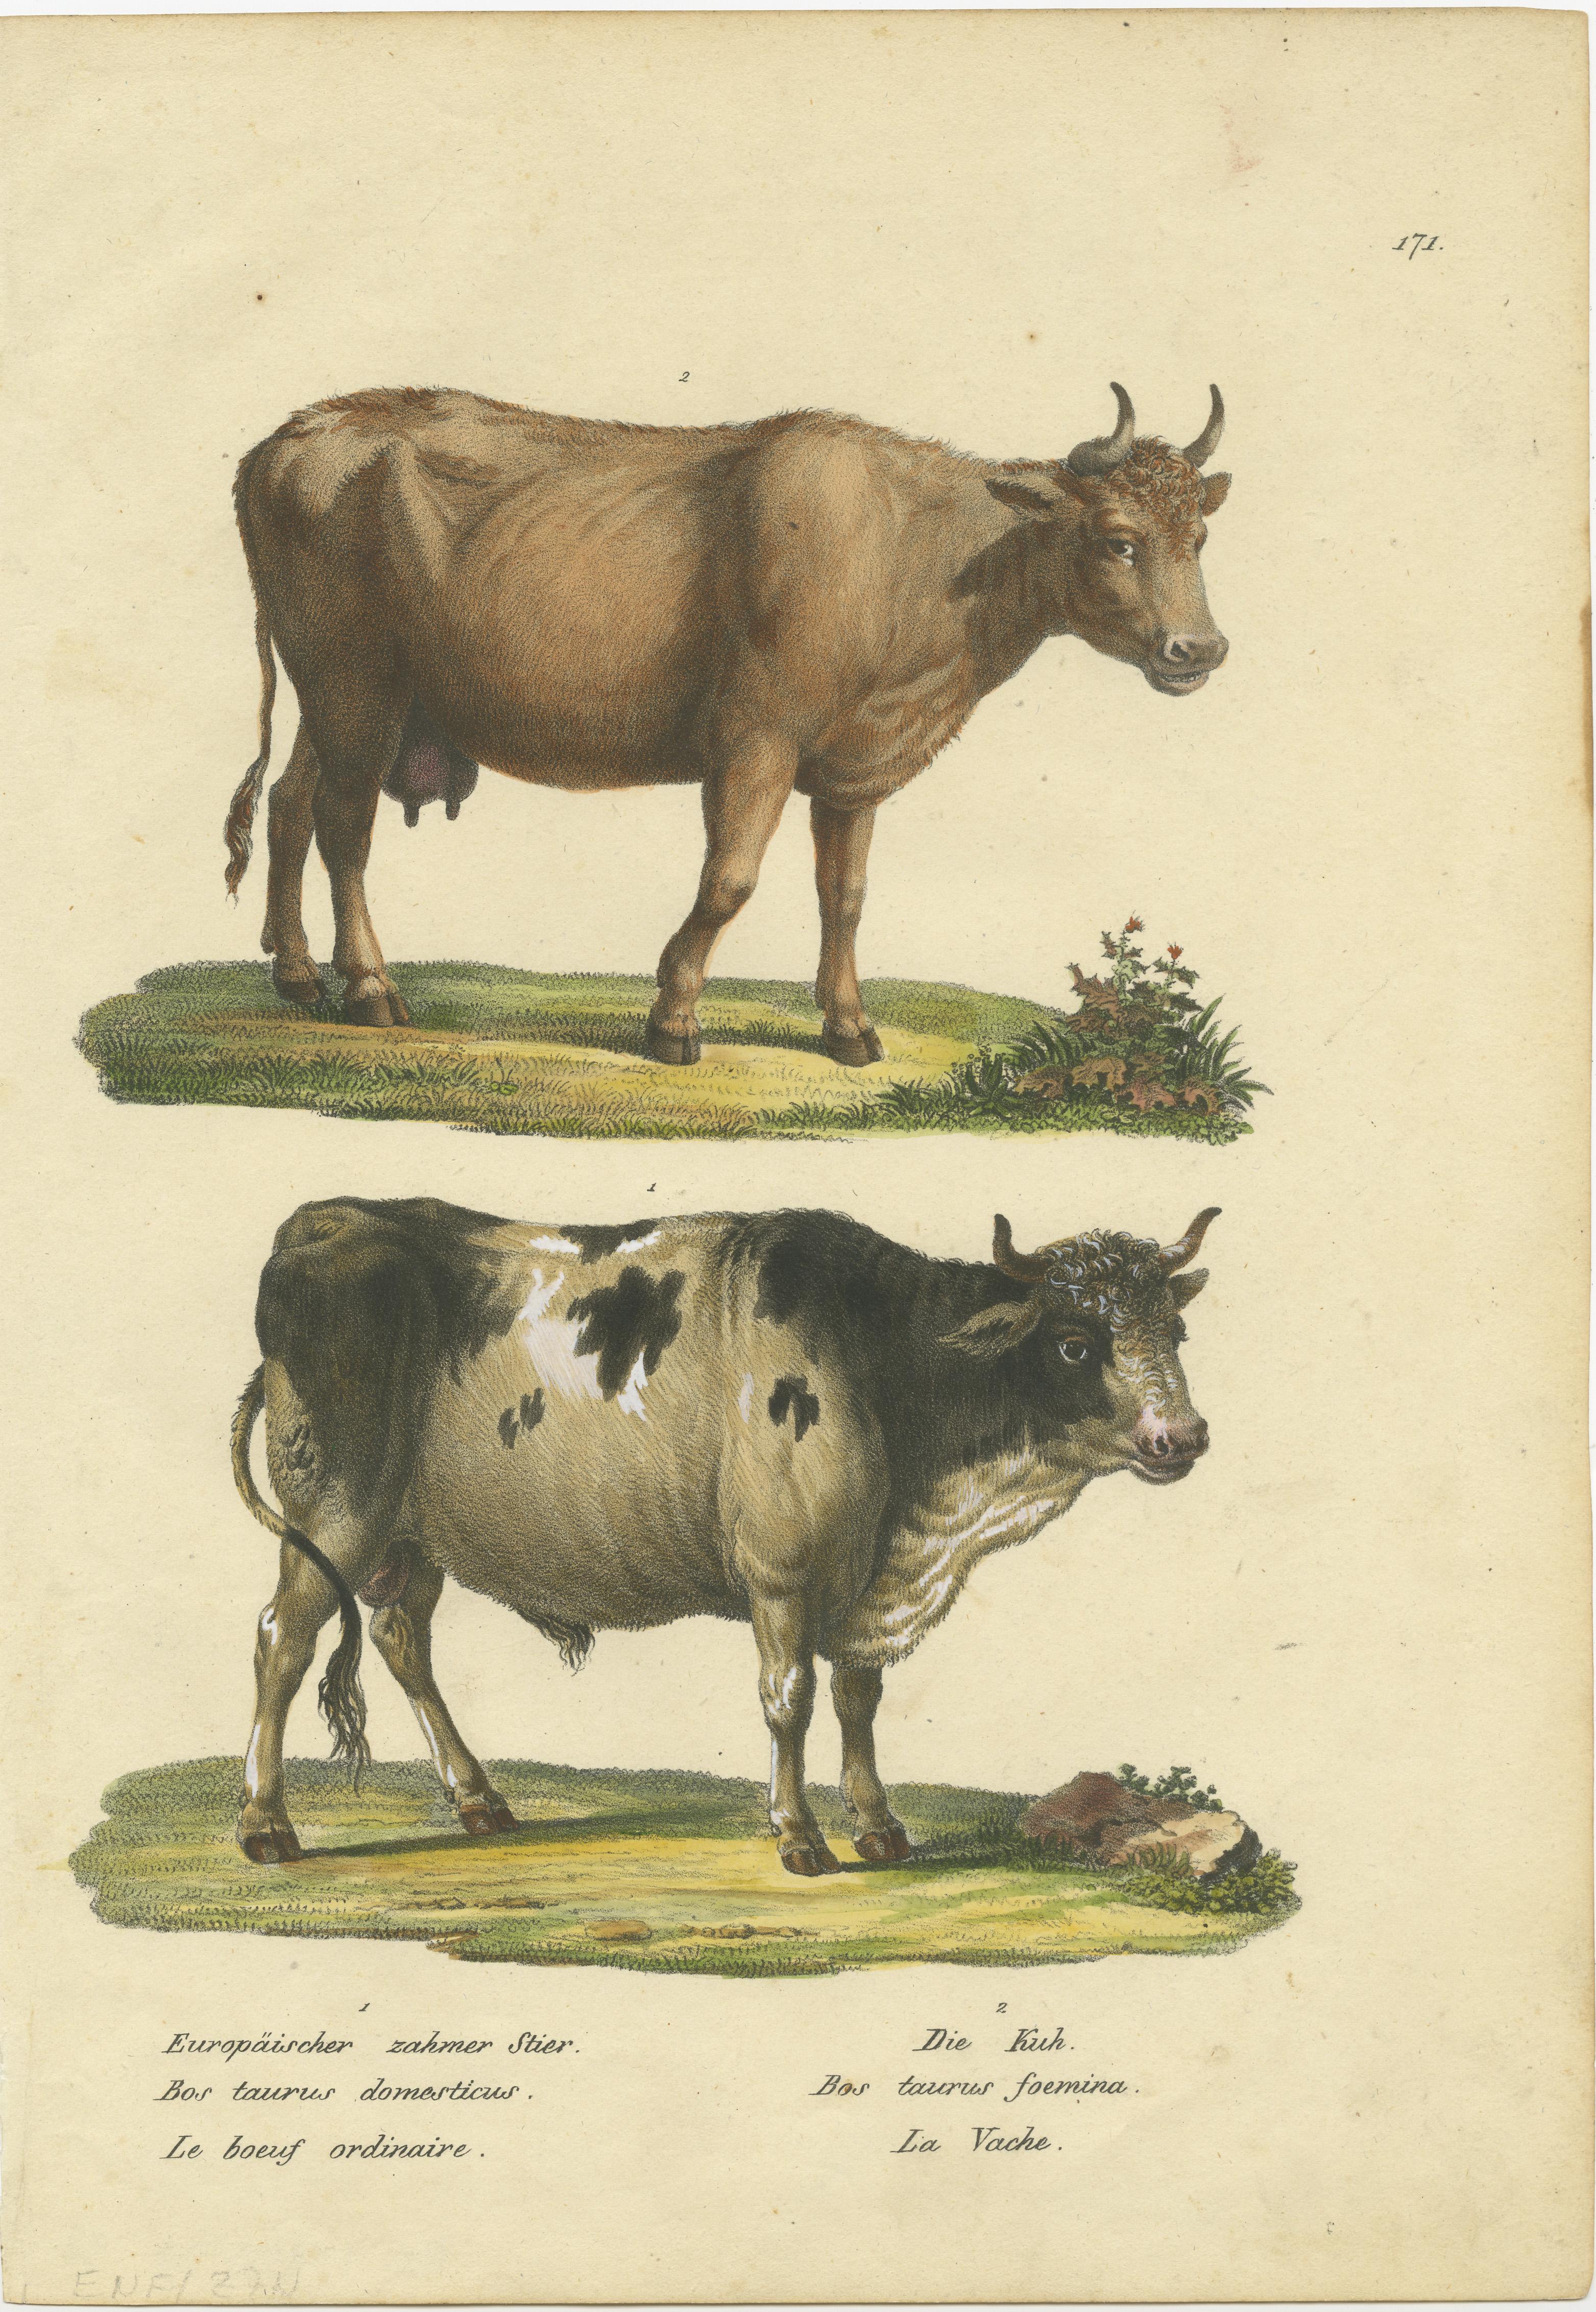 Antiker Druck mit dem Titel 'Europäischer zahmer Stier - Die Kuh (..)'. Originaler antiker Druck eines europäischen Stiers und einer Kuh. Dieser Druck stammt aus den 